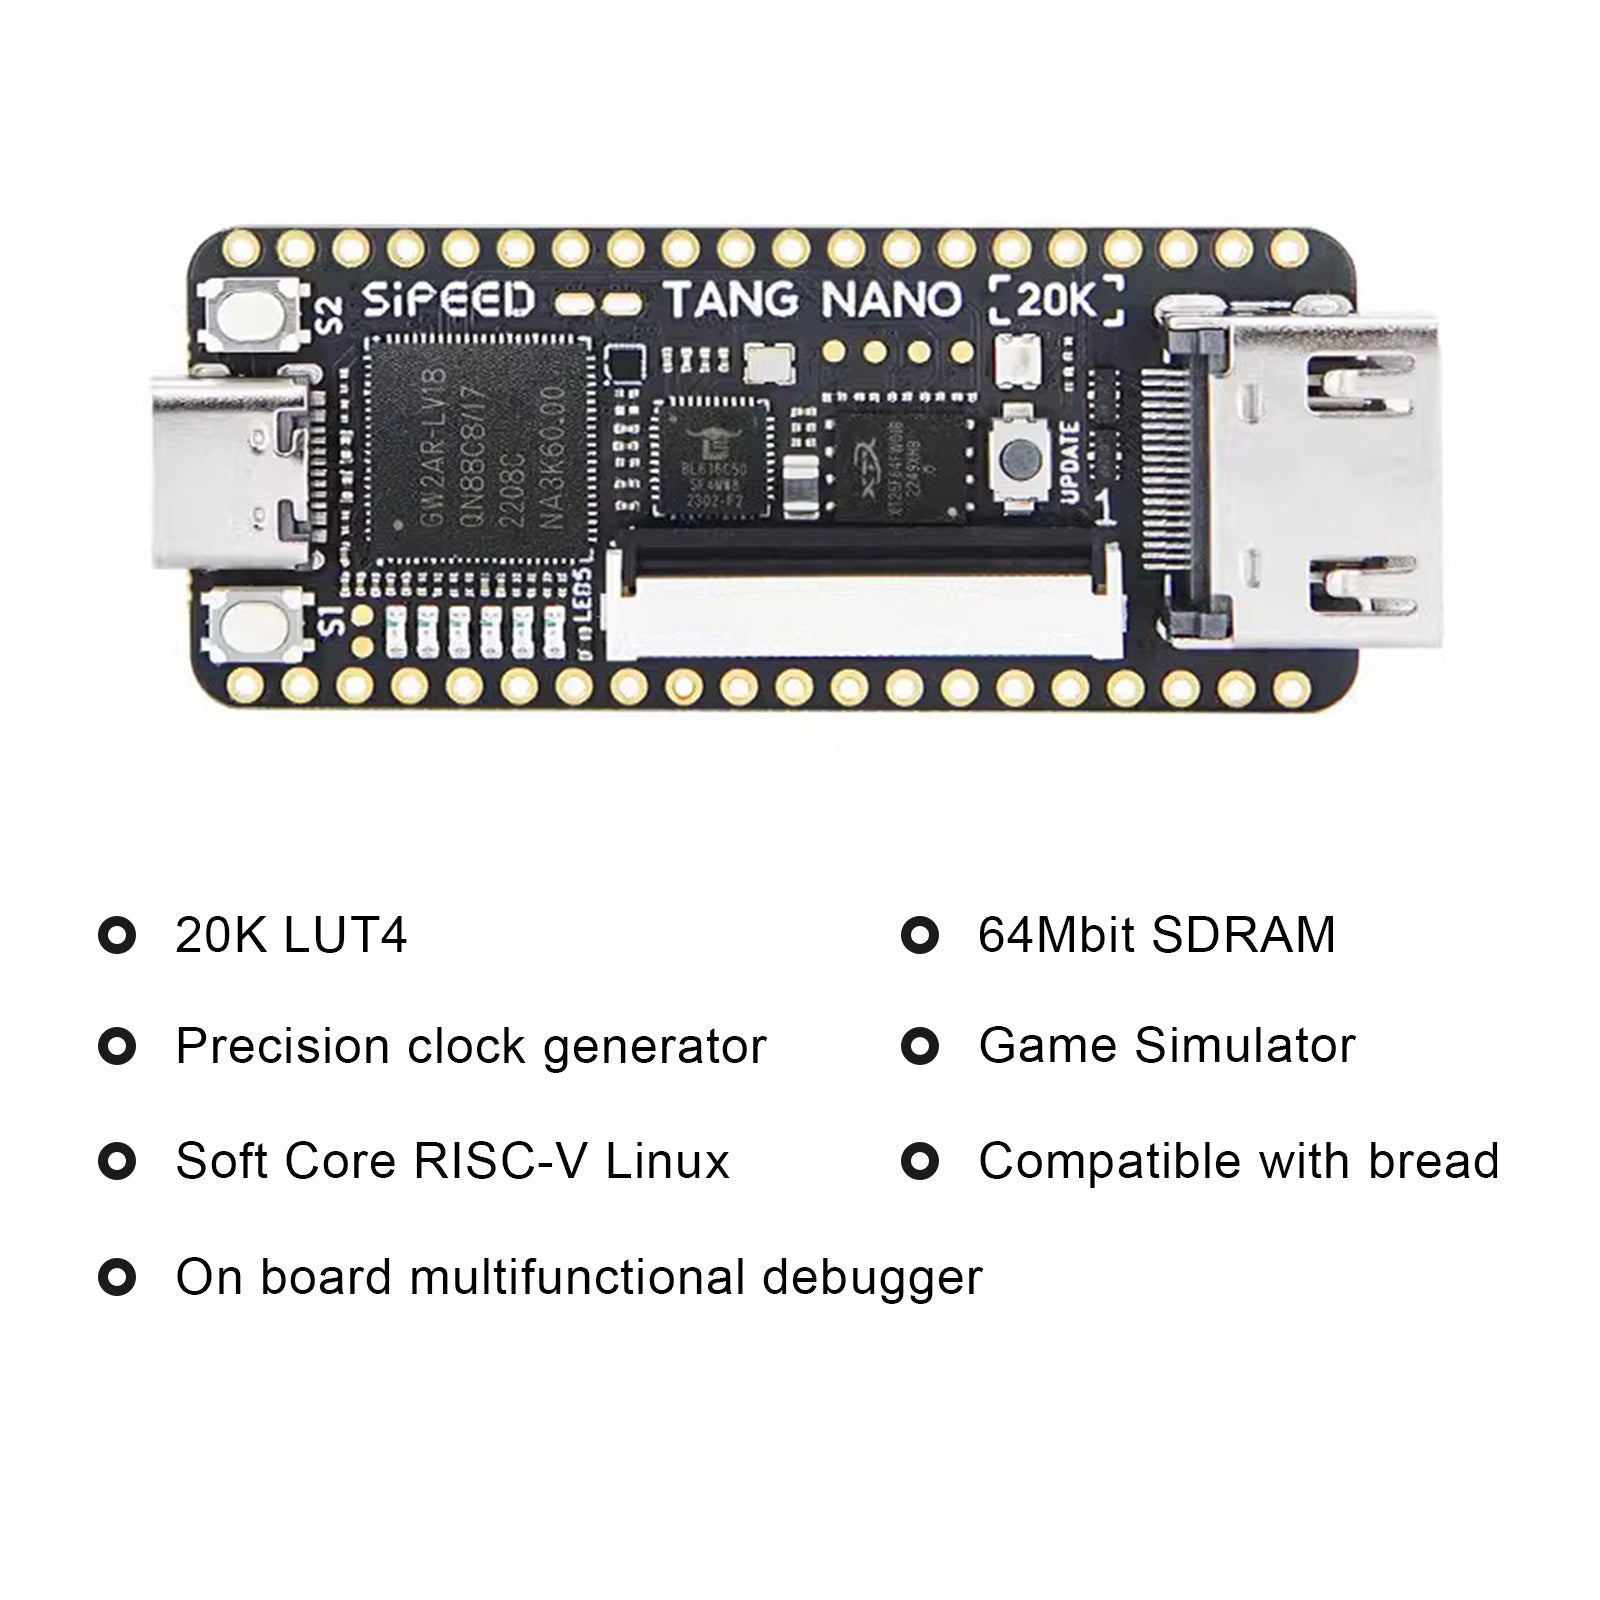 Sipeed Tang Nano 20K Placa de desarrollo FPGA de código abierto juego Retro con altavoz